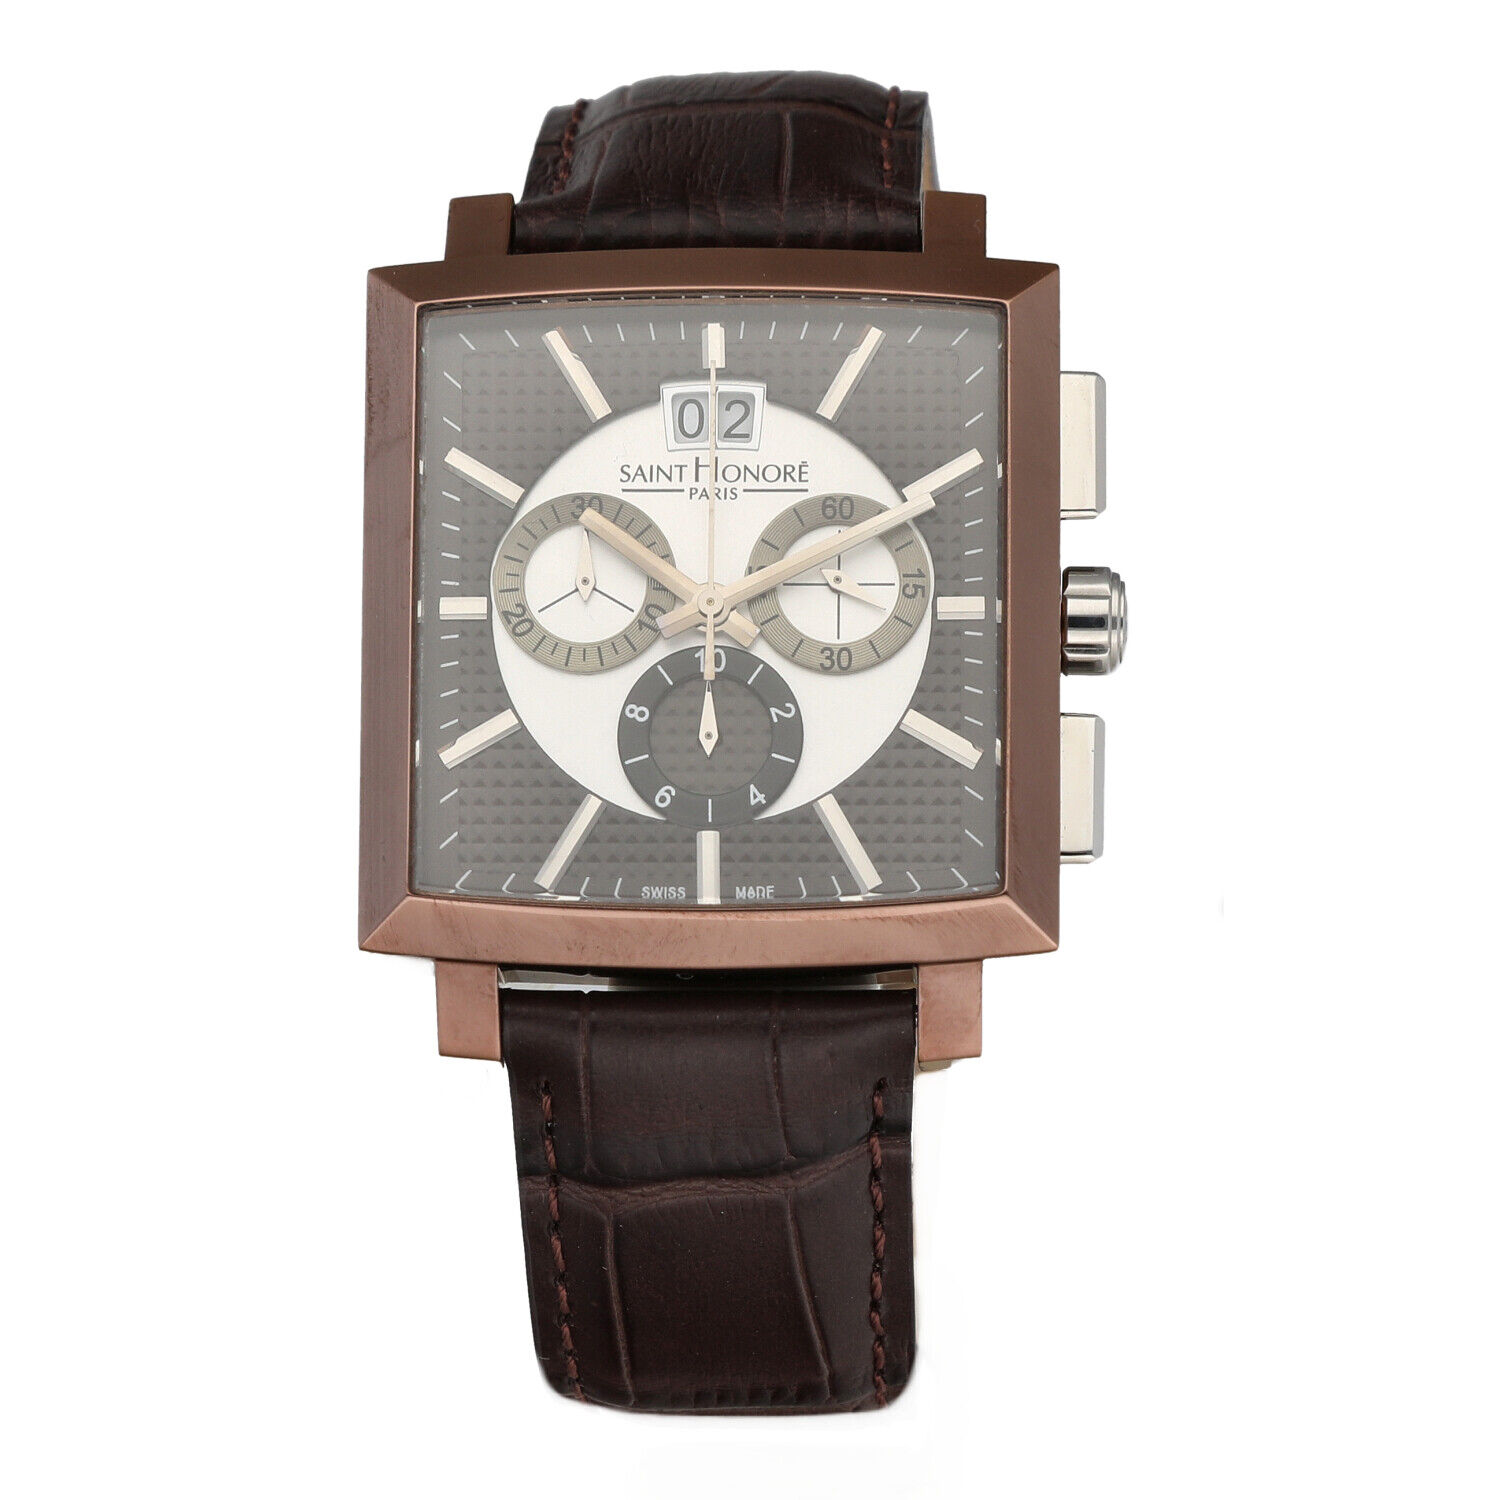 Saint Honoré 898093.71-C11 Bronze PVD Steel Chrono Leather Quartz Men's Watch